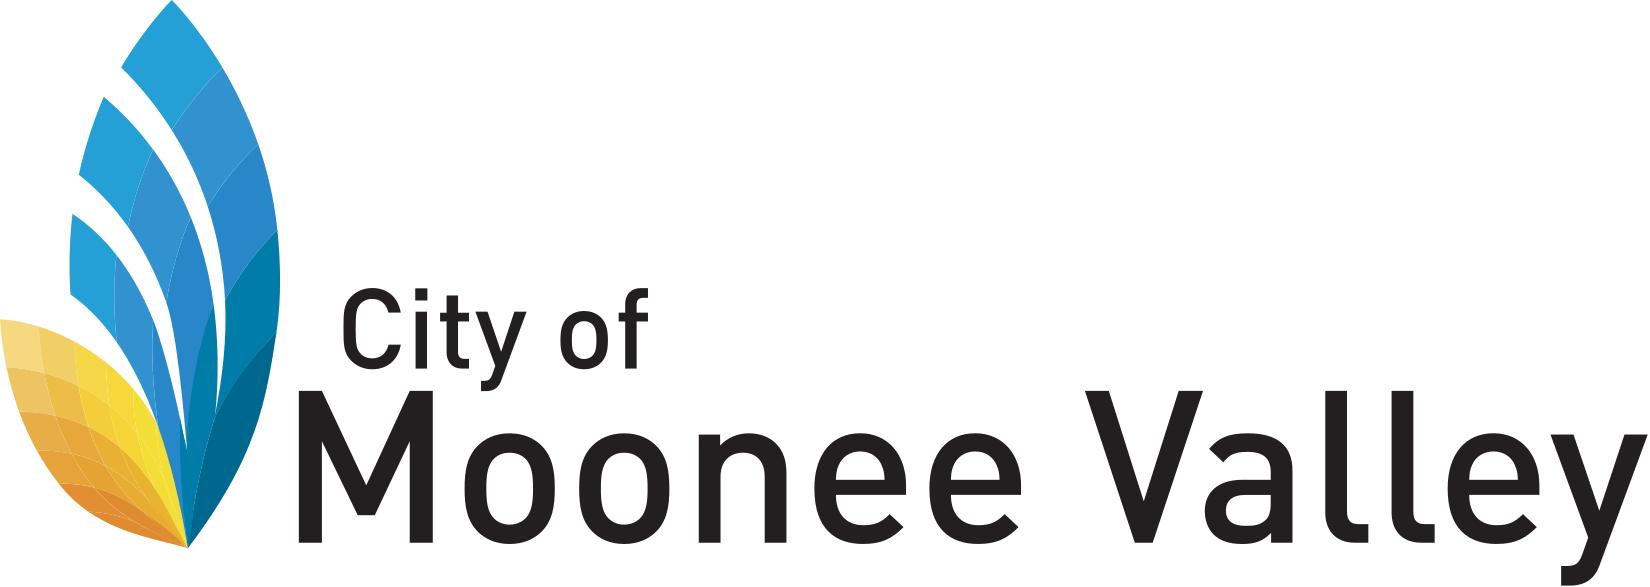 moonee valley council logo